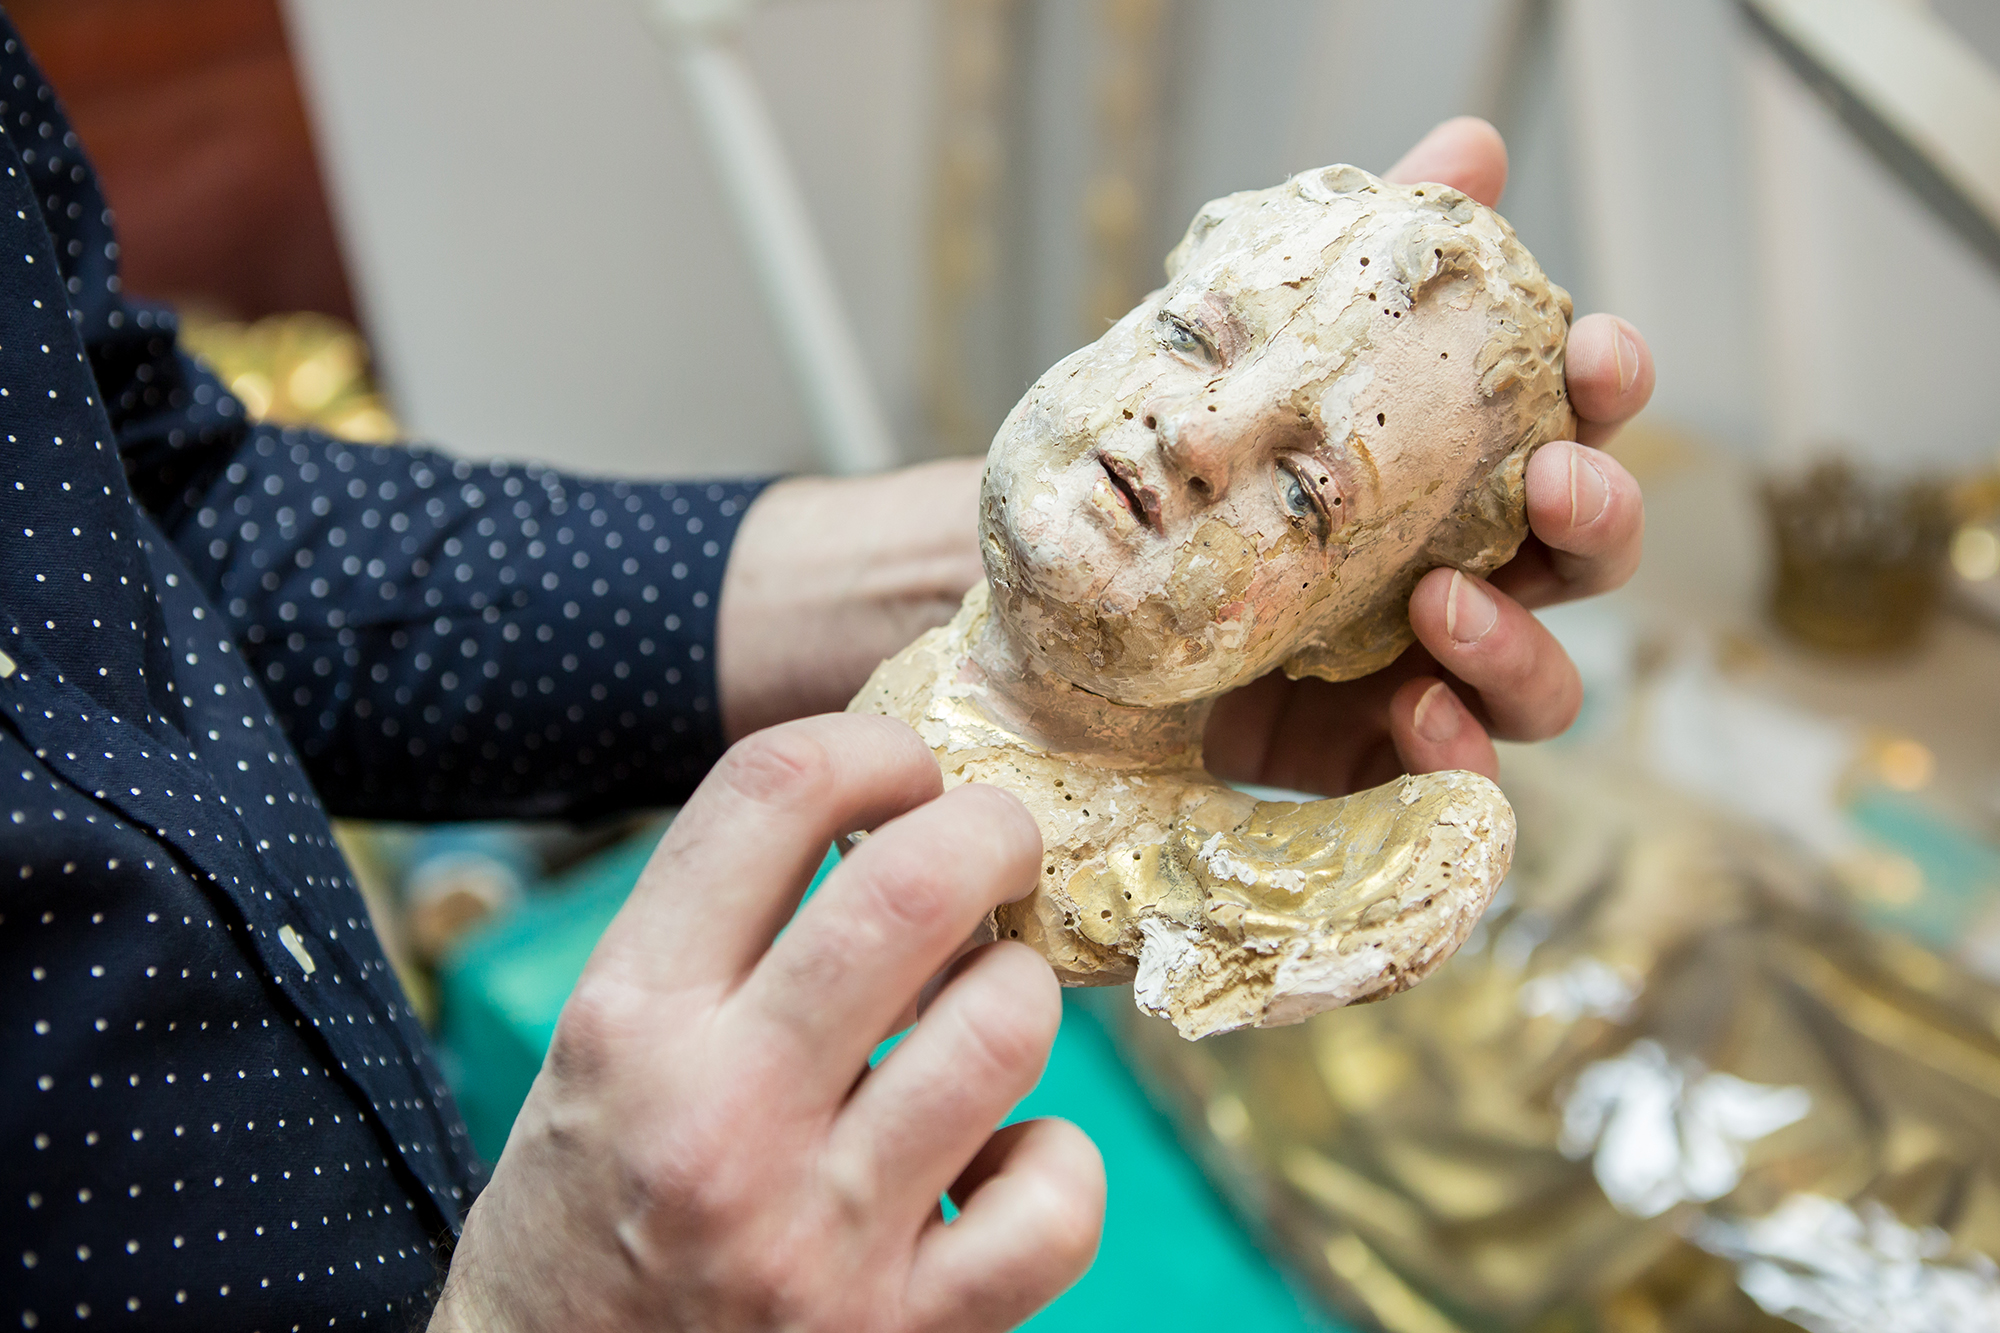 Bogdan pokazuje zniszczony motyw dekoracyjny przedstawiający głowę małego chłopca, tzw. putto.